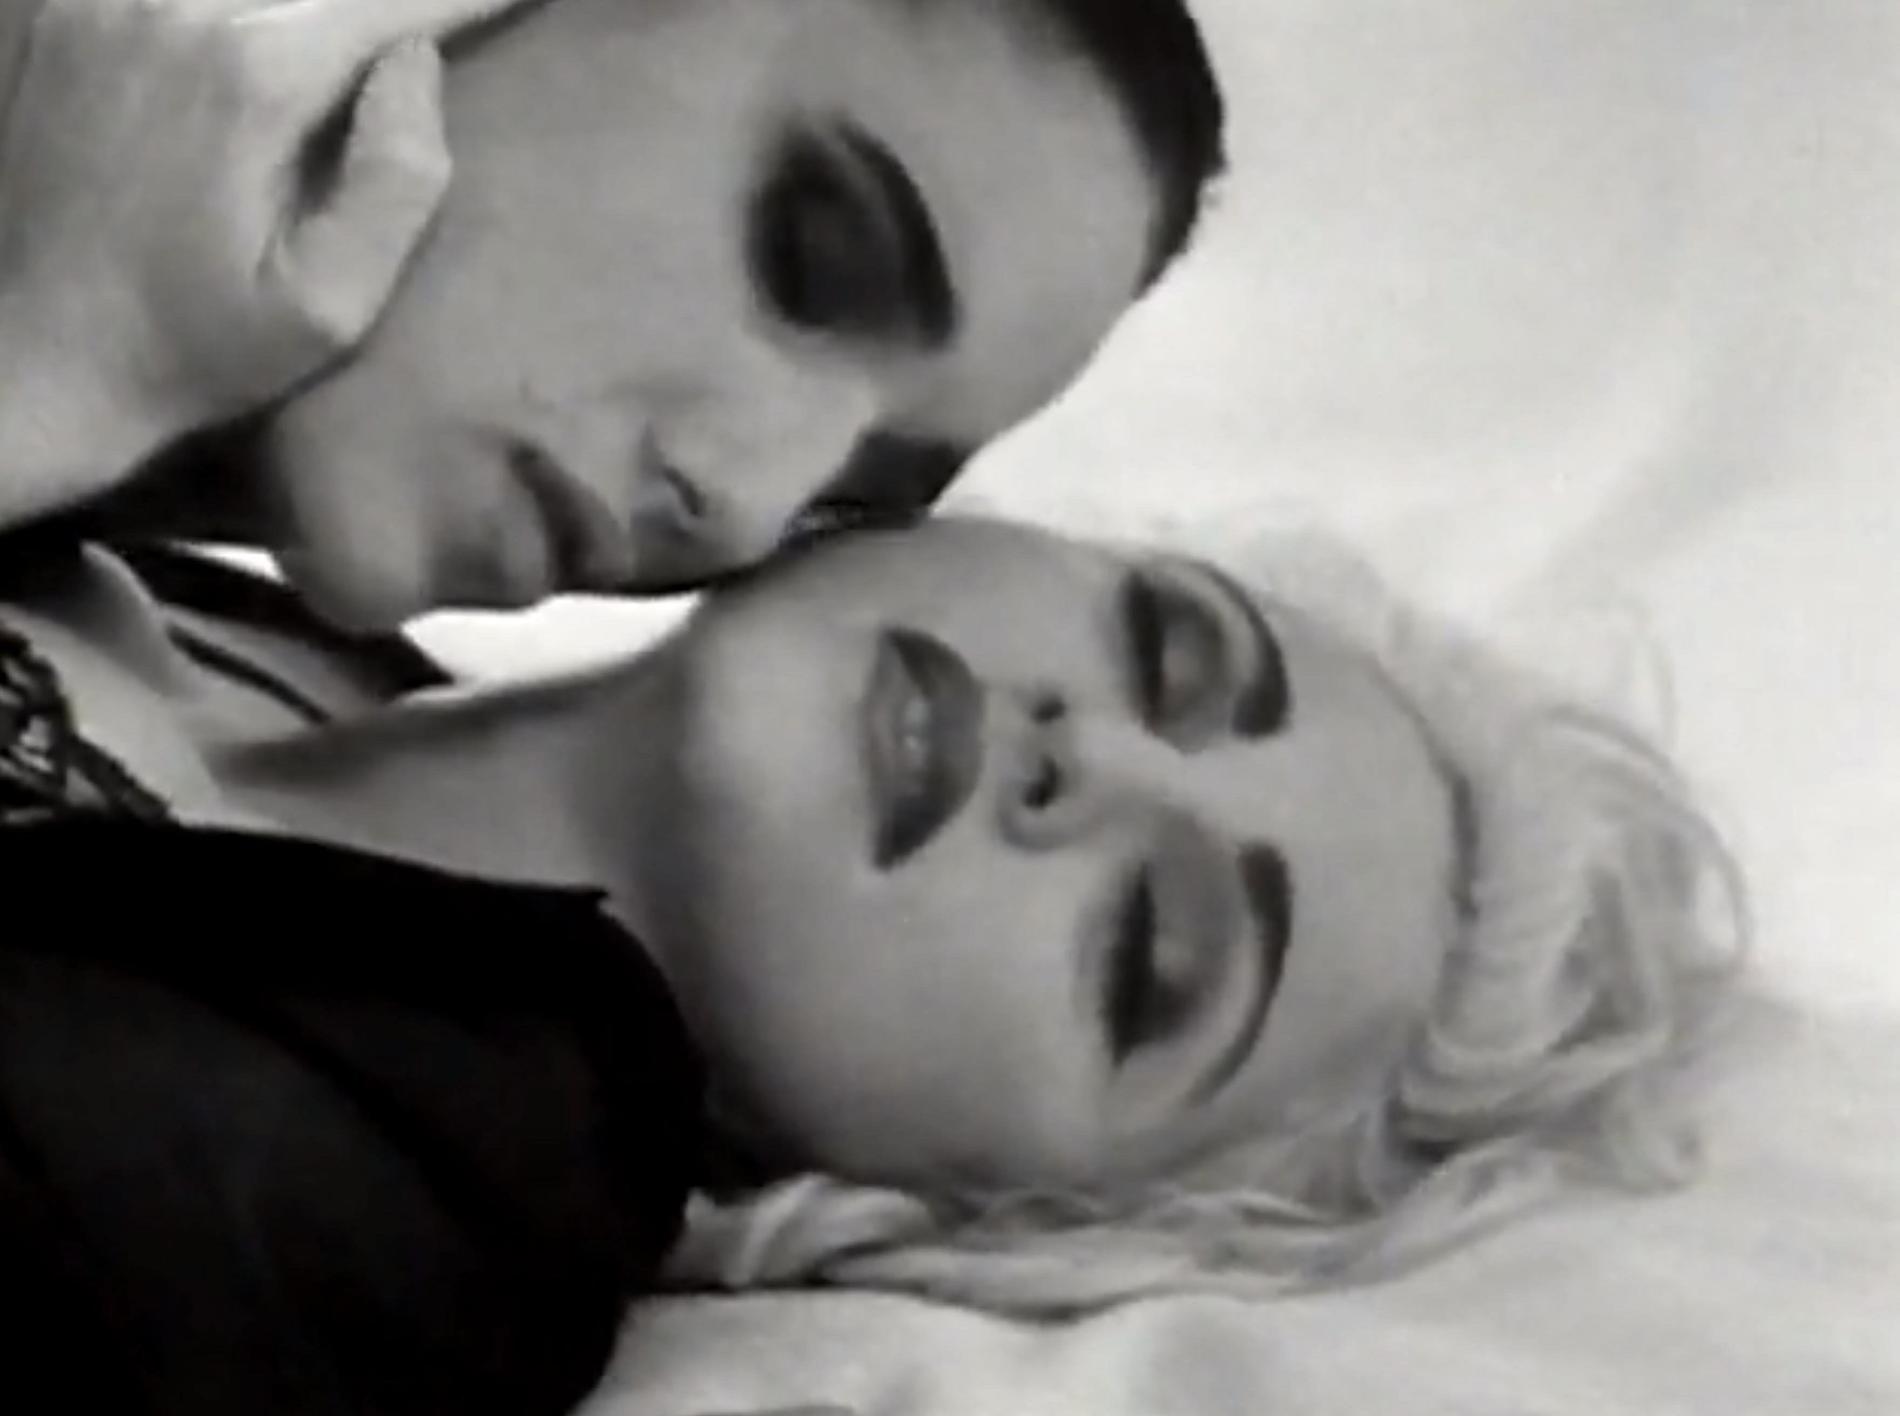 Madonna i sin musikvideo för låten ”Justify my love” 1990, som även den var kontroversiell och förbjöds av MTV.